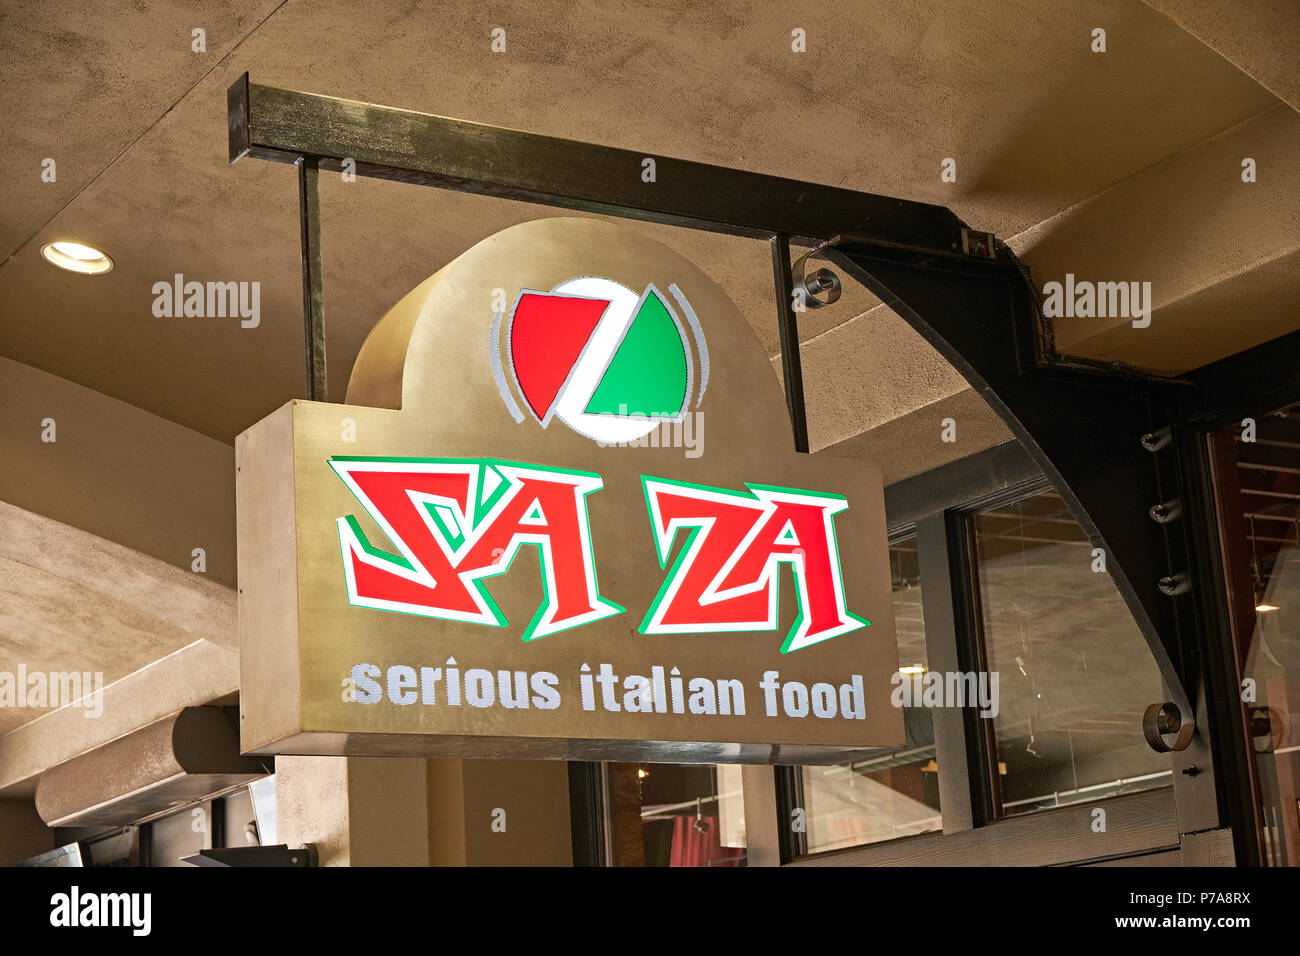 Hip LED Publicidad Publicidad signo de Saza, seria la comida Italiana, el restaurante en Montgomery, Alabama, Estados Unidos. Foto de stock